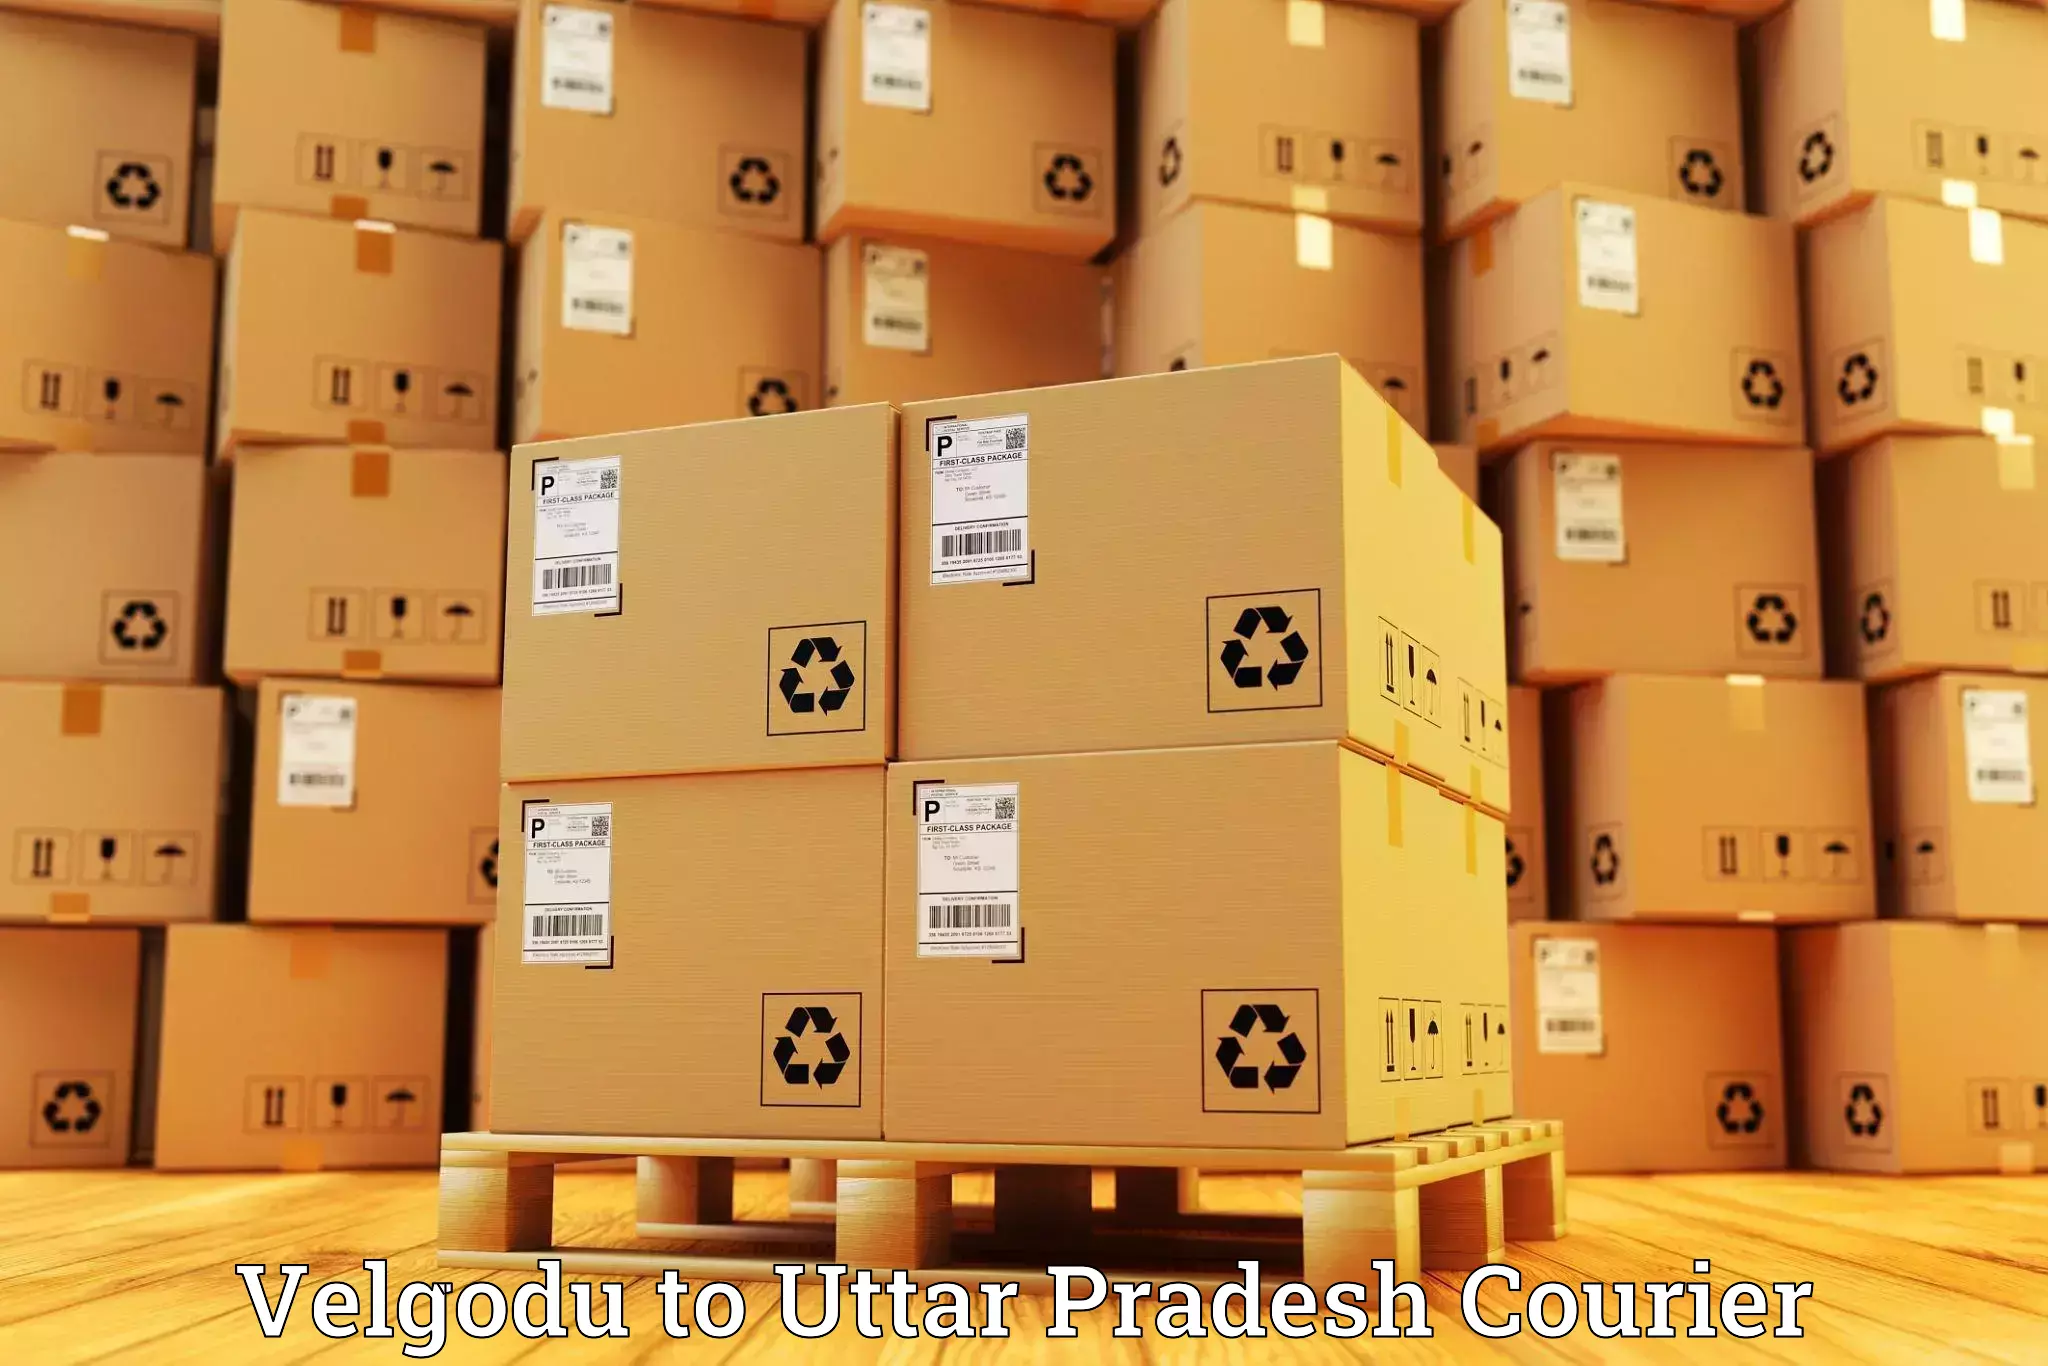 Baggage transport network Velgodu to Uttar Pradesh